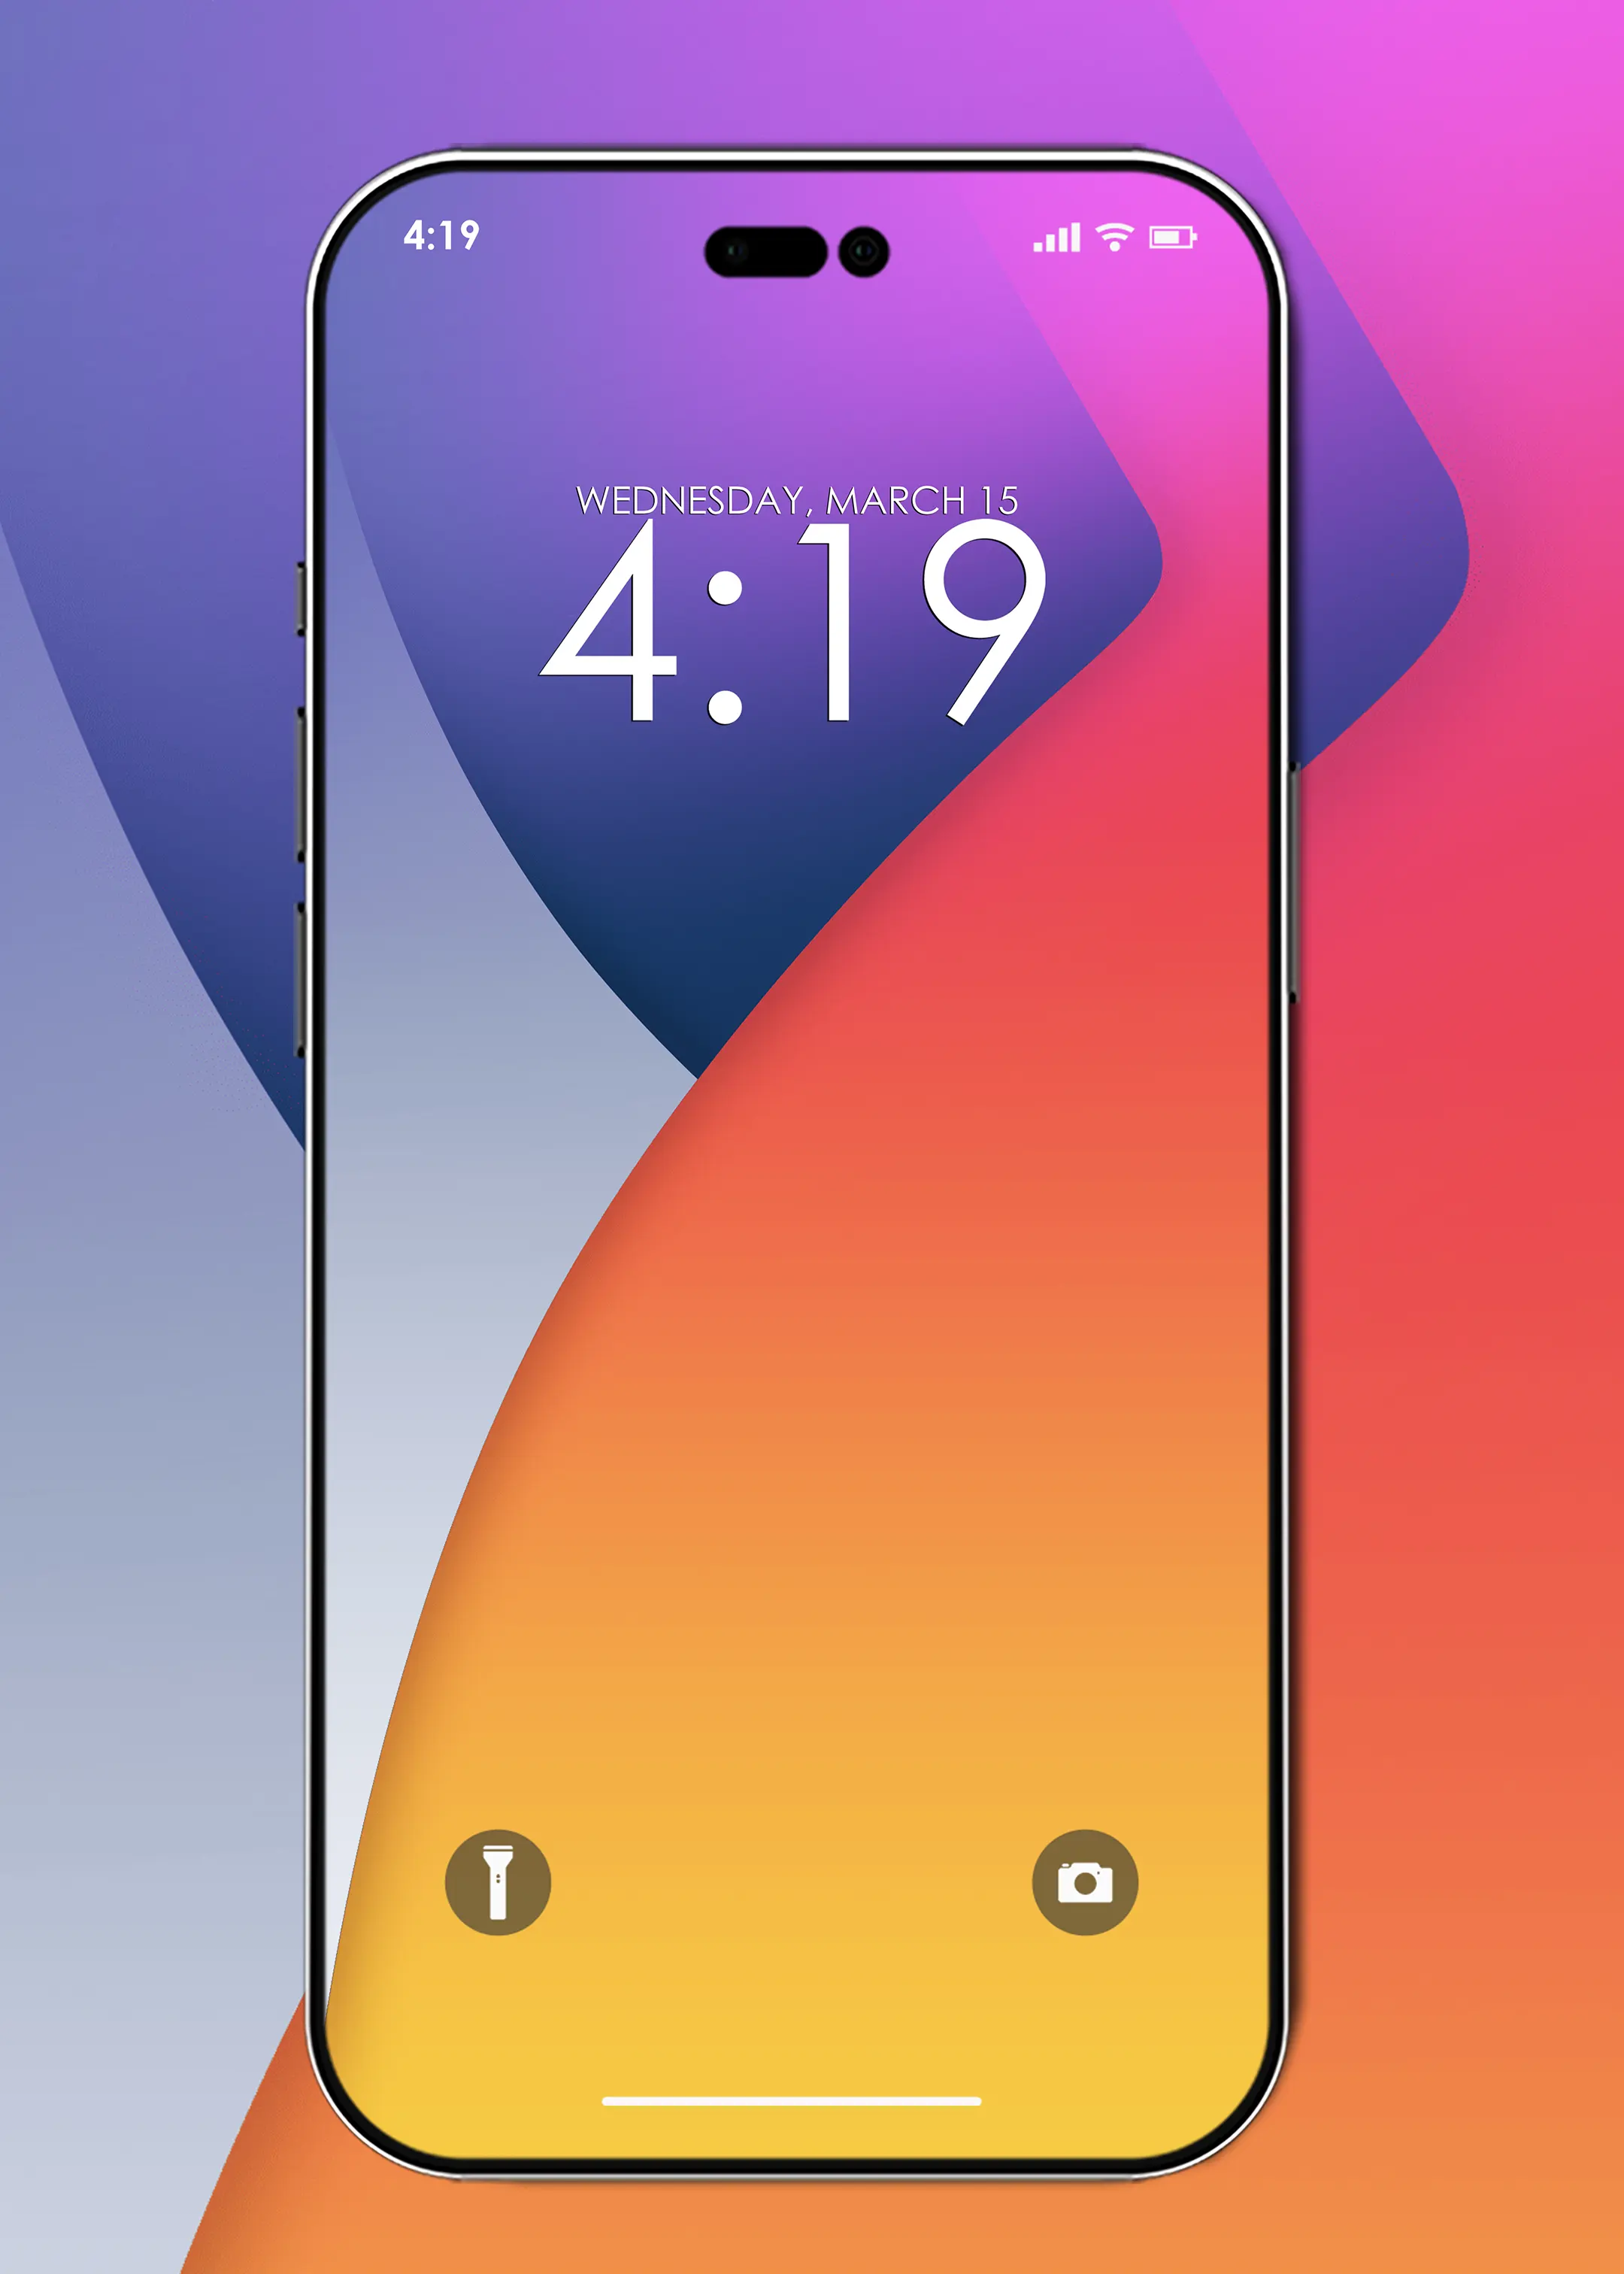 Hãy trang trí chiếc iPhone của bạn với hình nền IOS 14 đẹp mắt để làm nổi bật màn hình. Với những biểu tượng độc đáo, hình nền sẽ tạo nên một không gian mới lạ cho điện thoại của bạn.